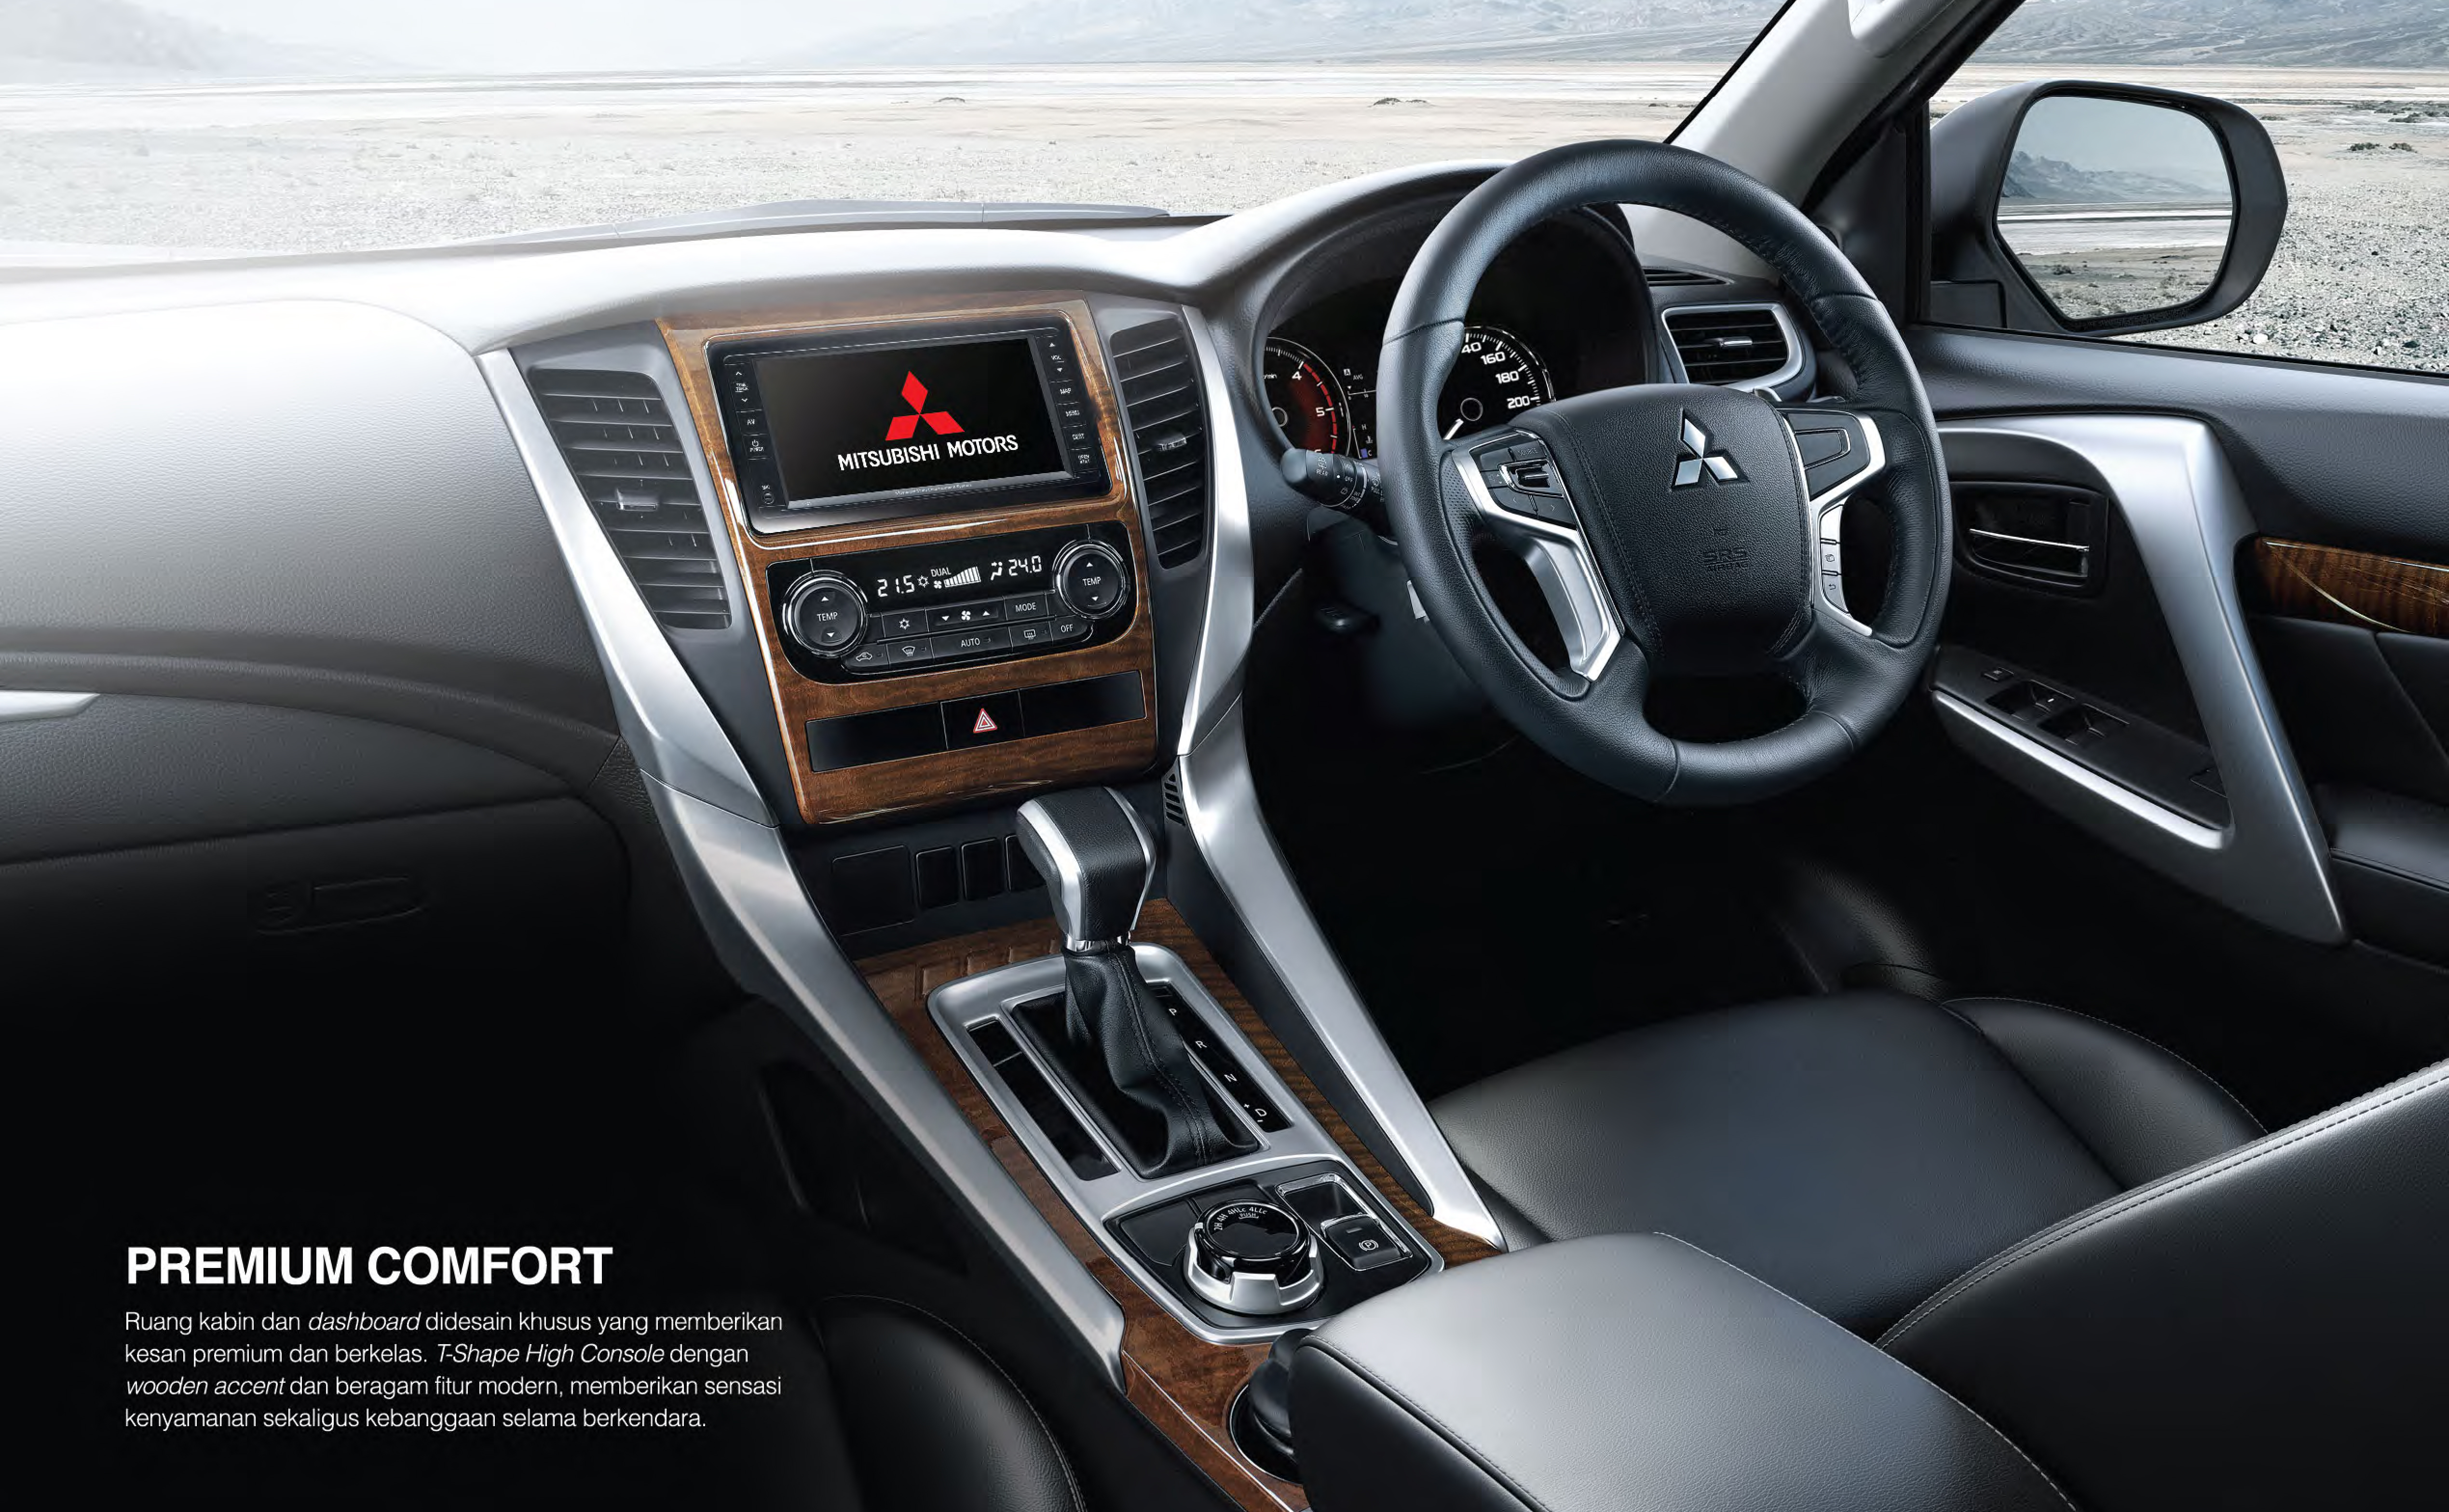 Mitsubishi Pajero Sport interior specifications